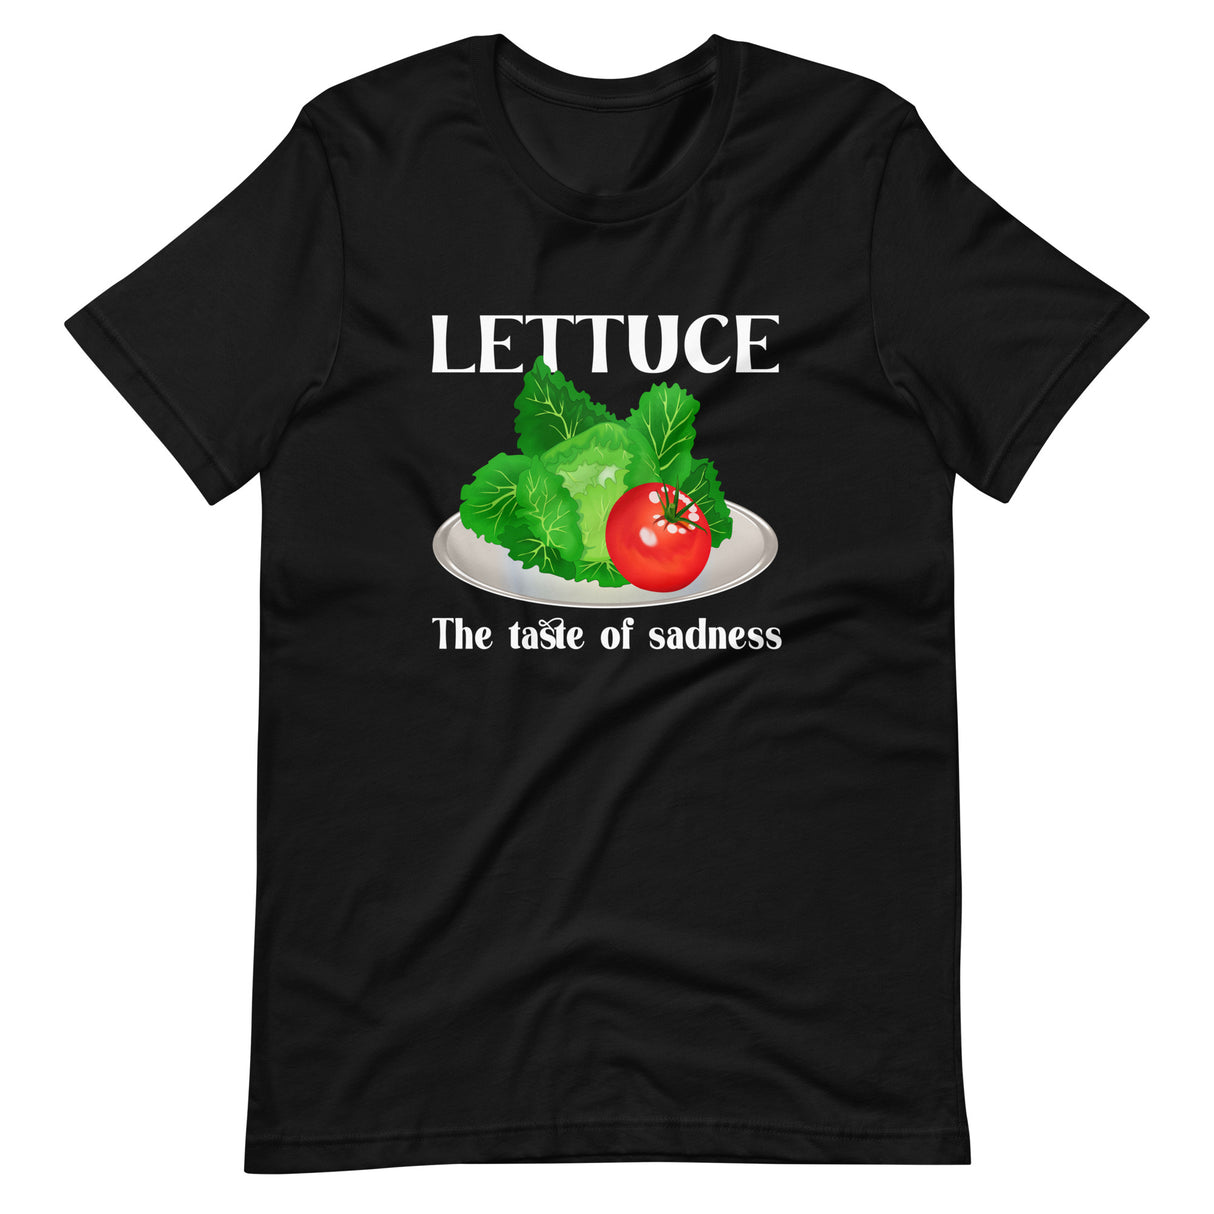 Lettuce is the taste of sadness shirt